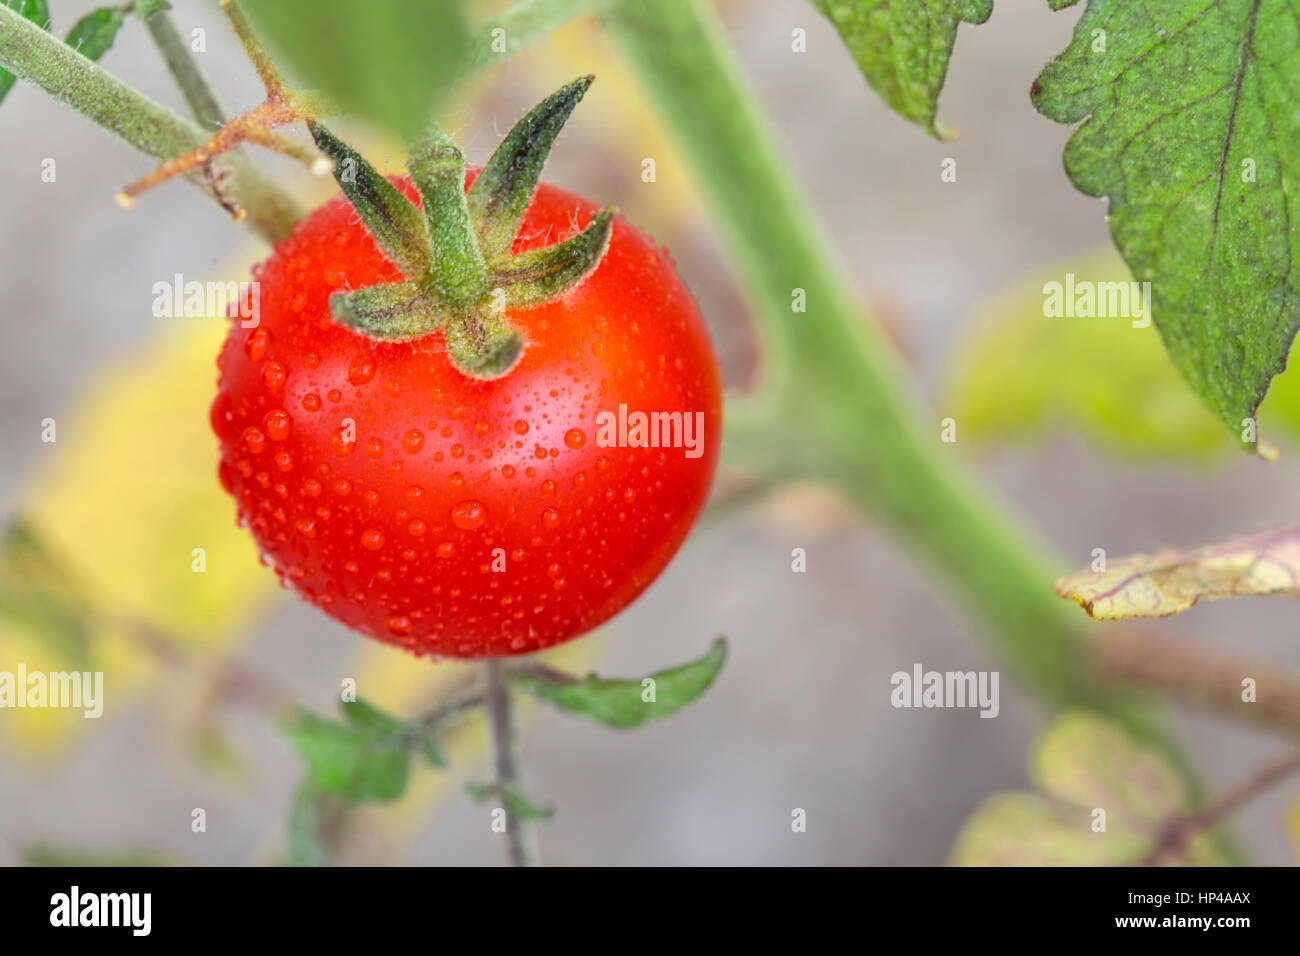 Cherry tomato on the vine. Lycopersicon esculentum philovita F1, family Solanaceae Stock Photo